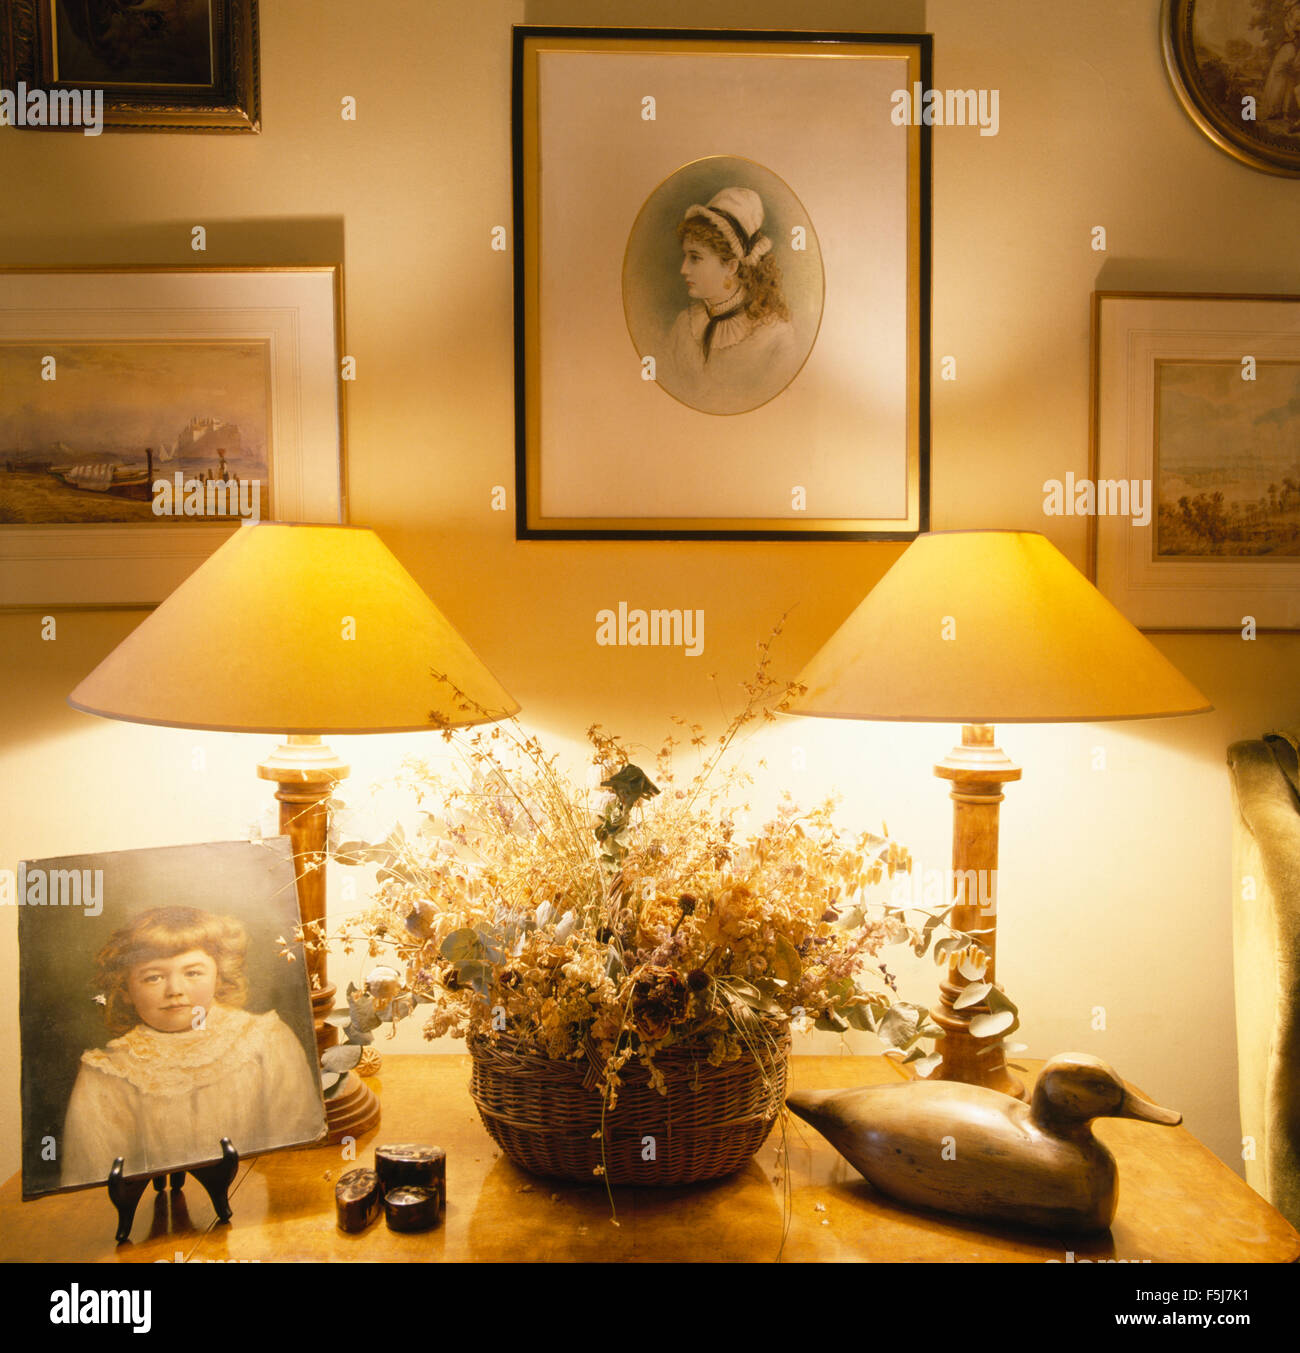 Gruppe von Bildern an der Wand über dem Tisch mit brennenden Lampen und einen Korb mit getrockneten Blumen neben eine Holzente Stockfoto